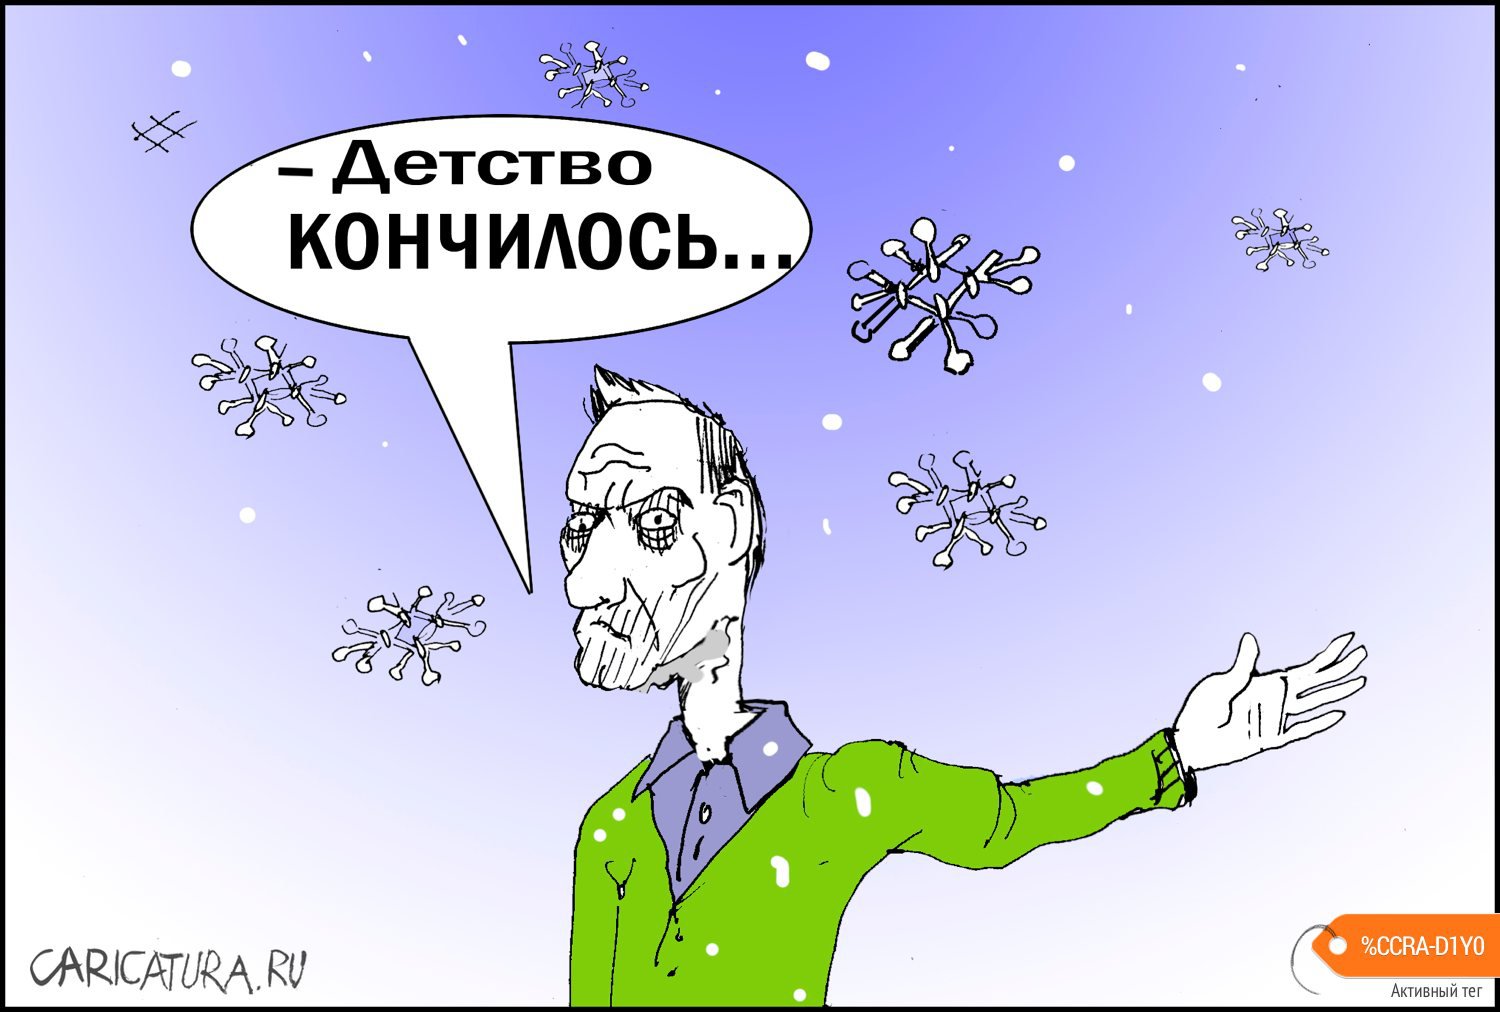 Карикатура "Срок", Александр Уваров